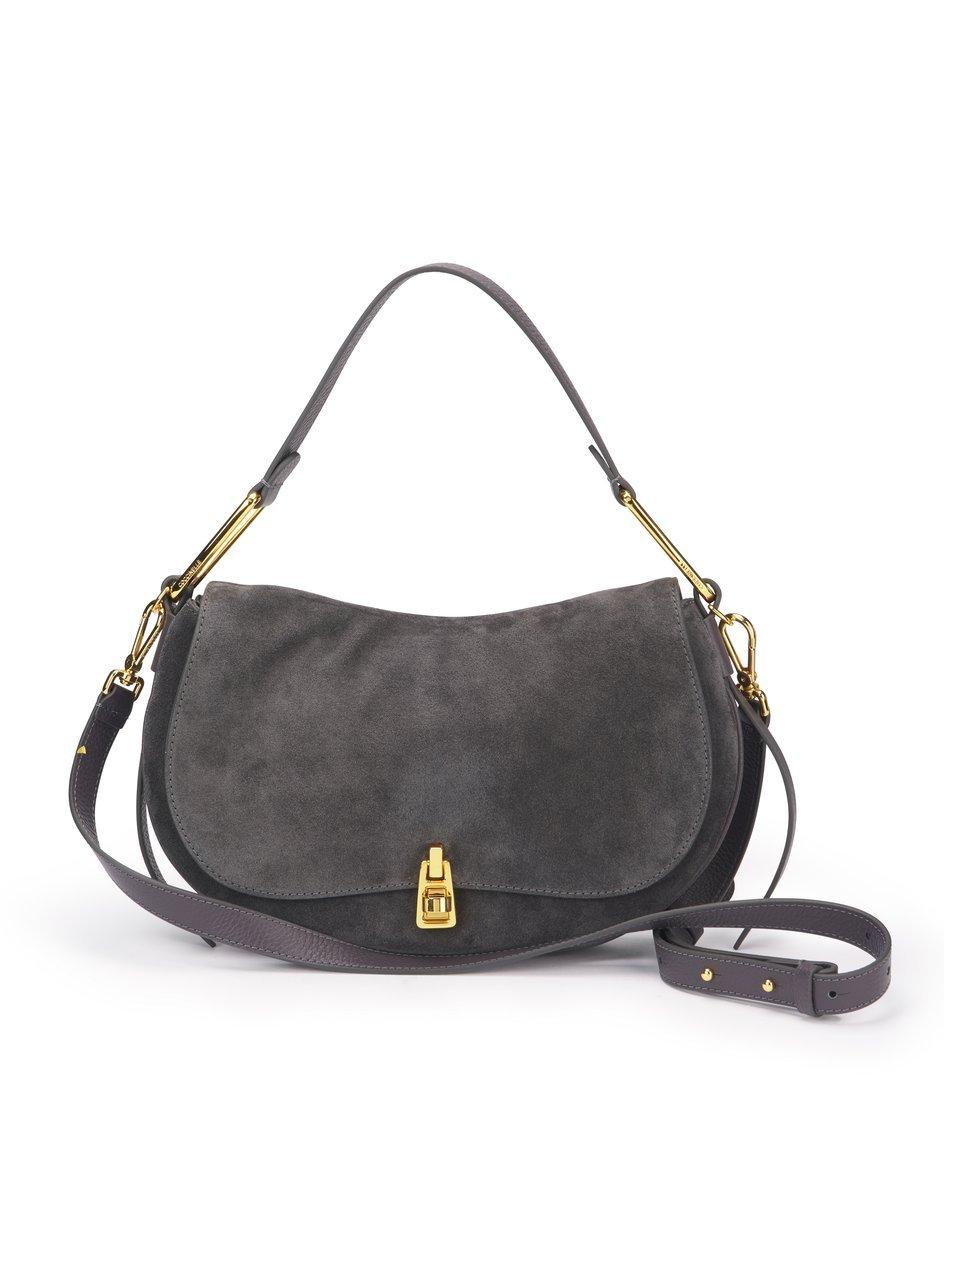 Image of Handbag “Magie Suede“ Coccinelle grey